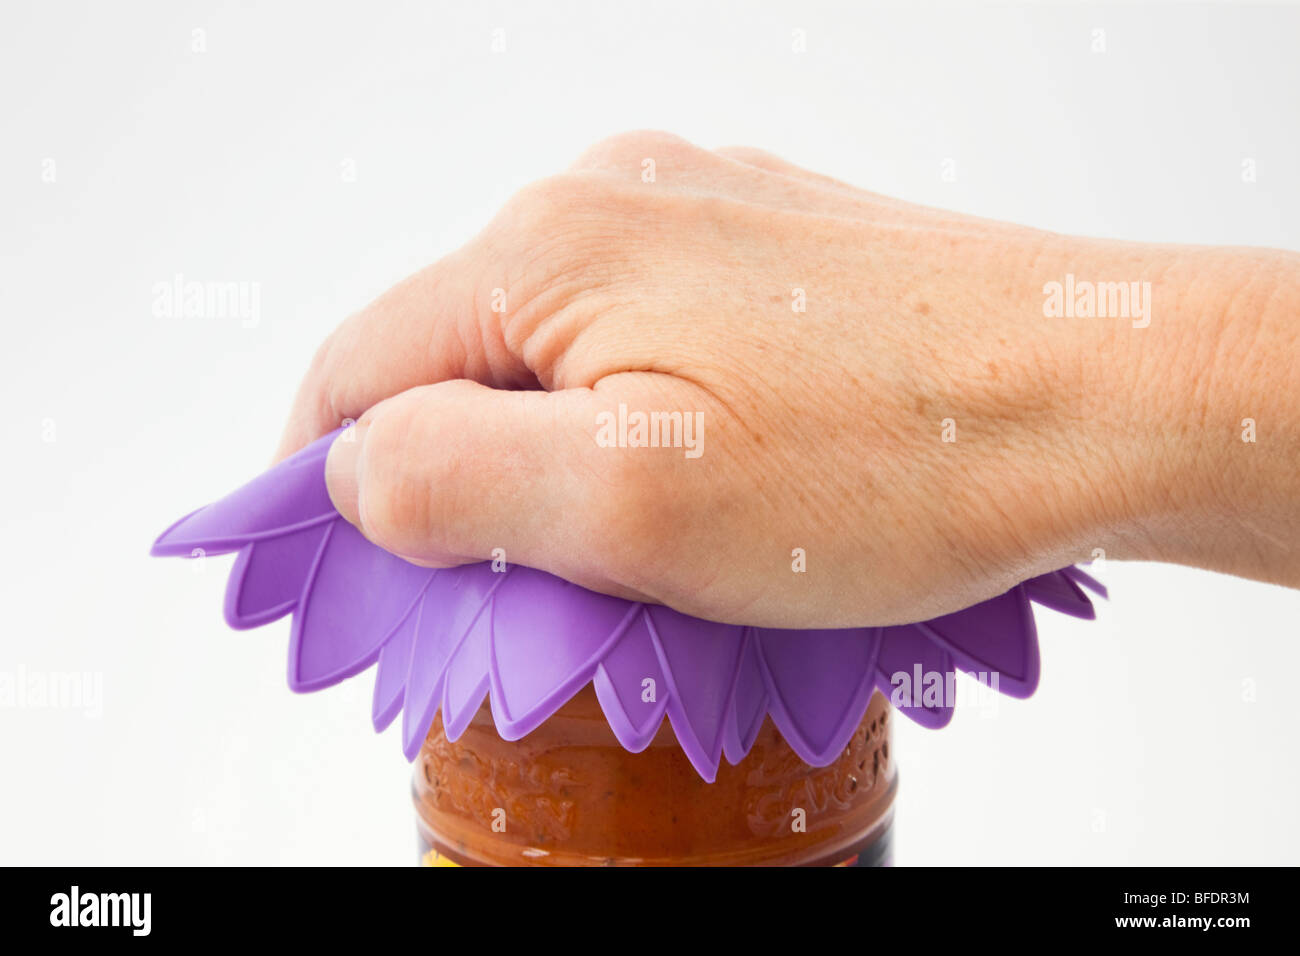 Main de la personne mature en tournant ouvrir un pot à nourriture à l'aide d'un trépied en caoutchouc de silicone pour retirer le dessus. Angleterre Royaume-Uni Banque D'Images